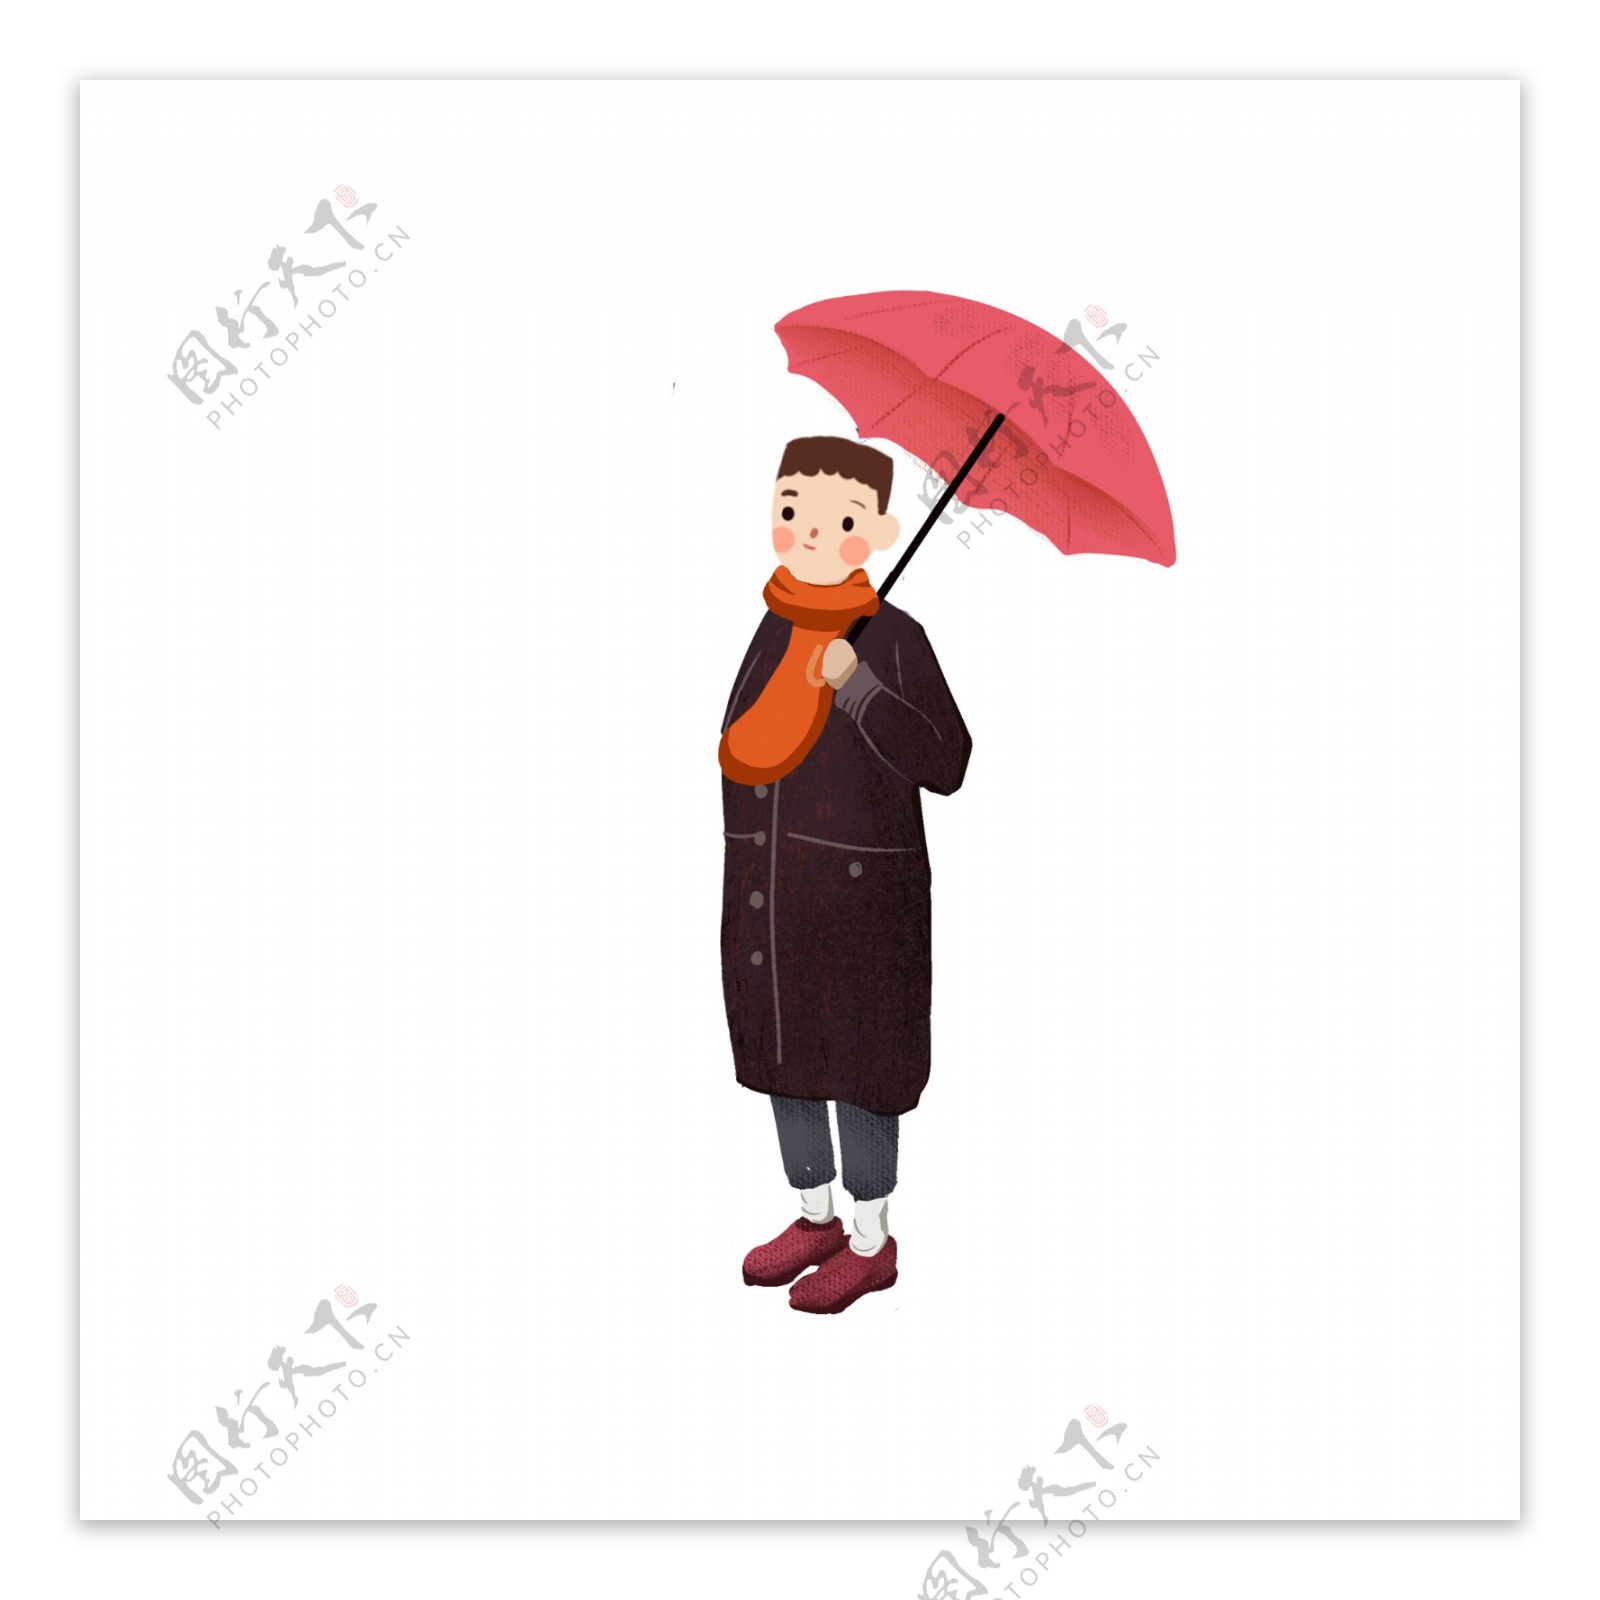 撑着伞的少年手绘人物设计